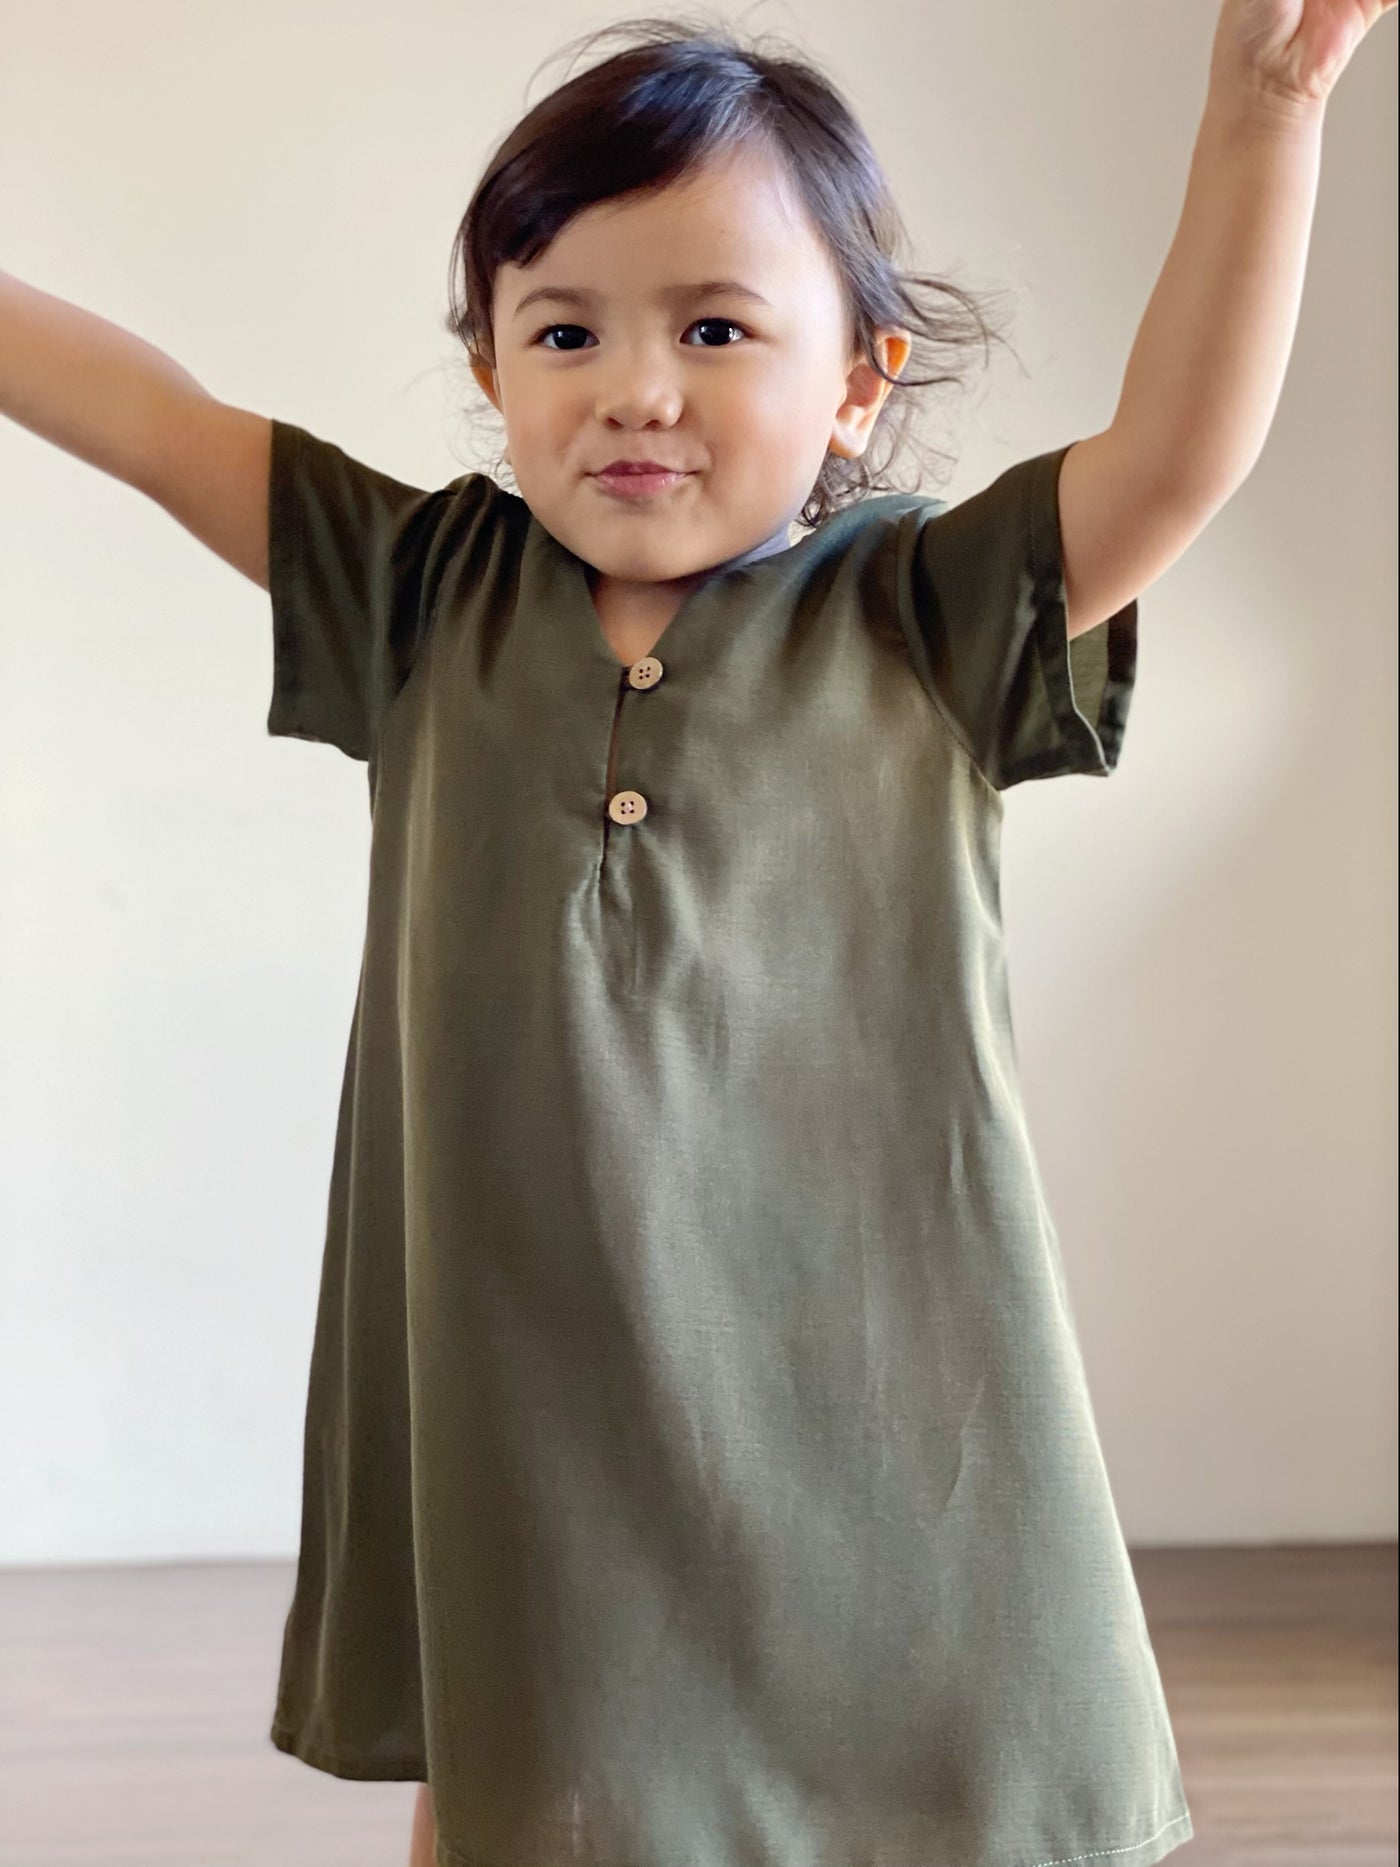 ULYA Baby's One-Piece Dress in Olive